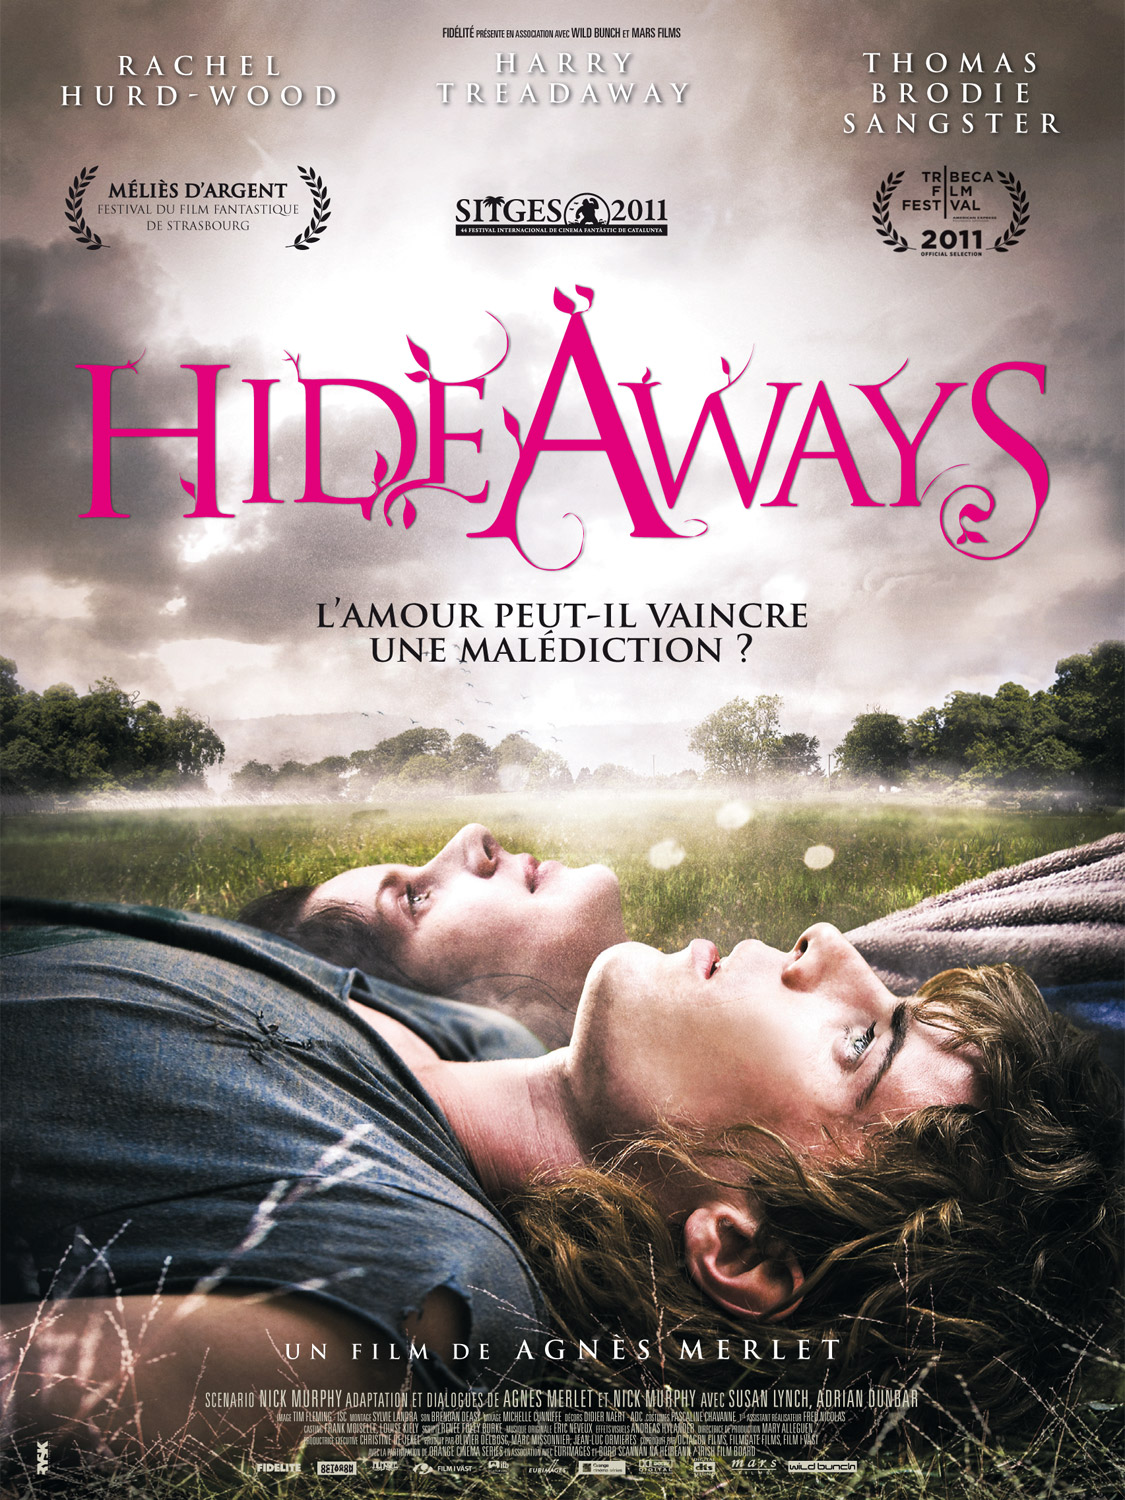 Hideaways 2011 film scene di nudo